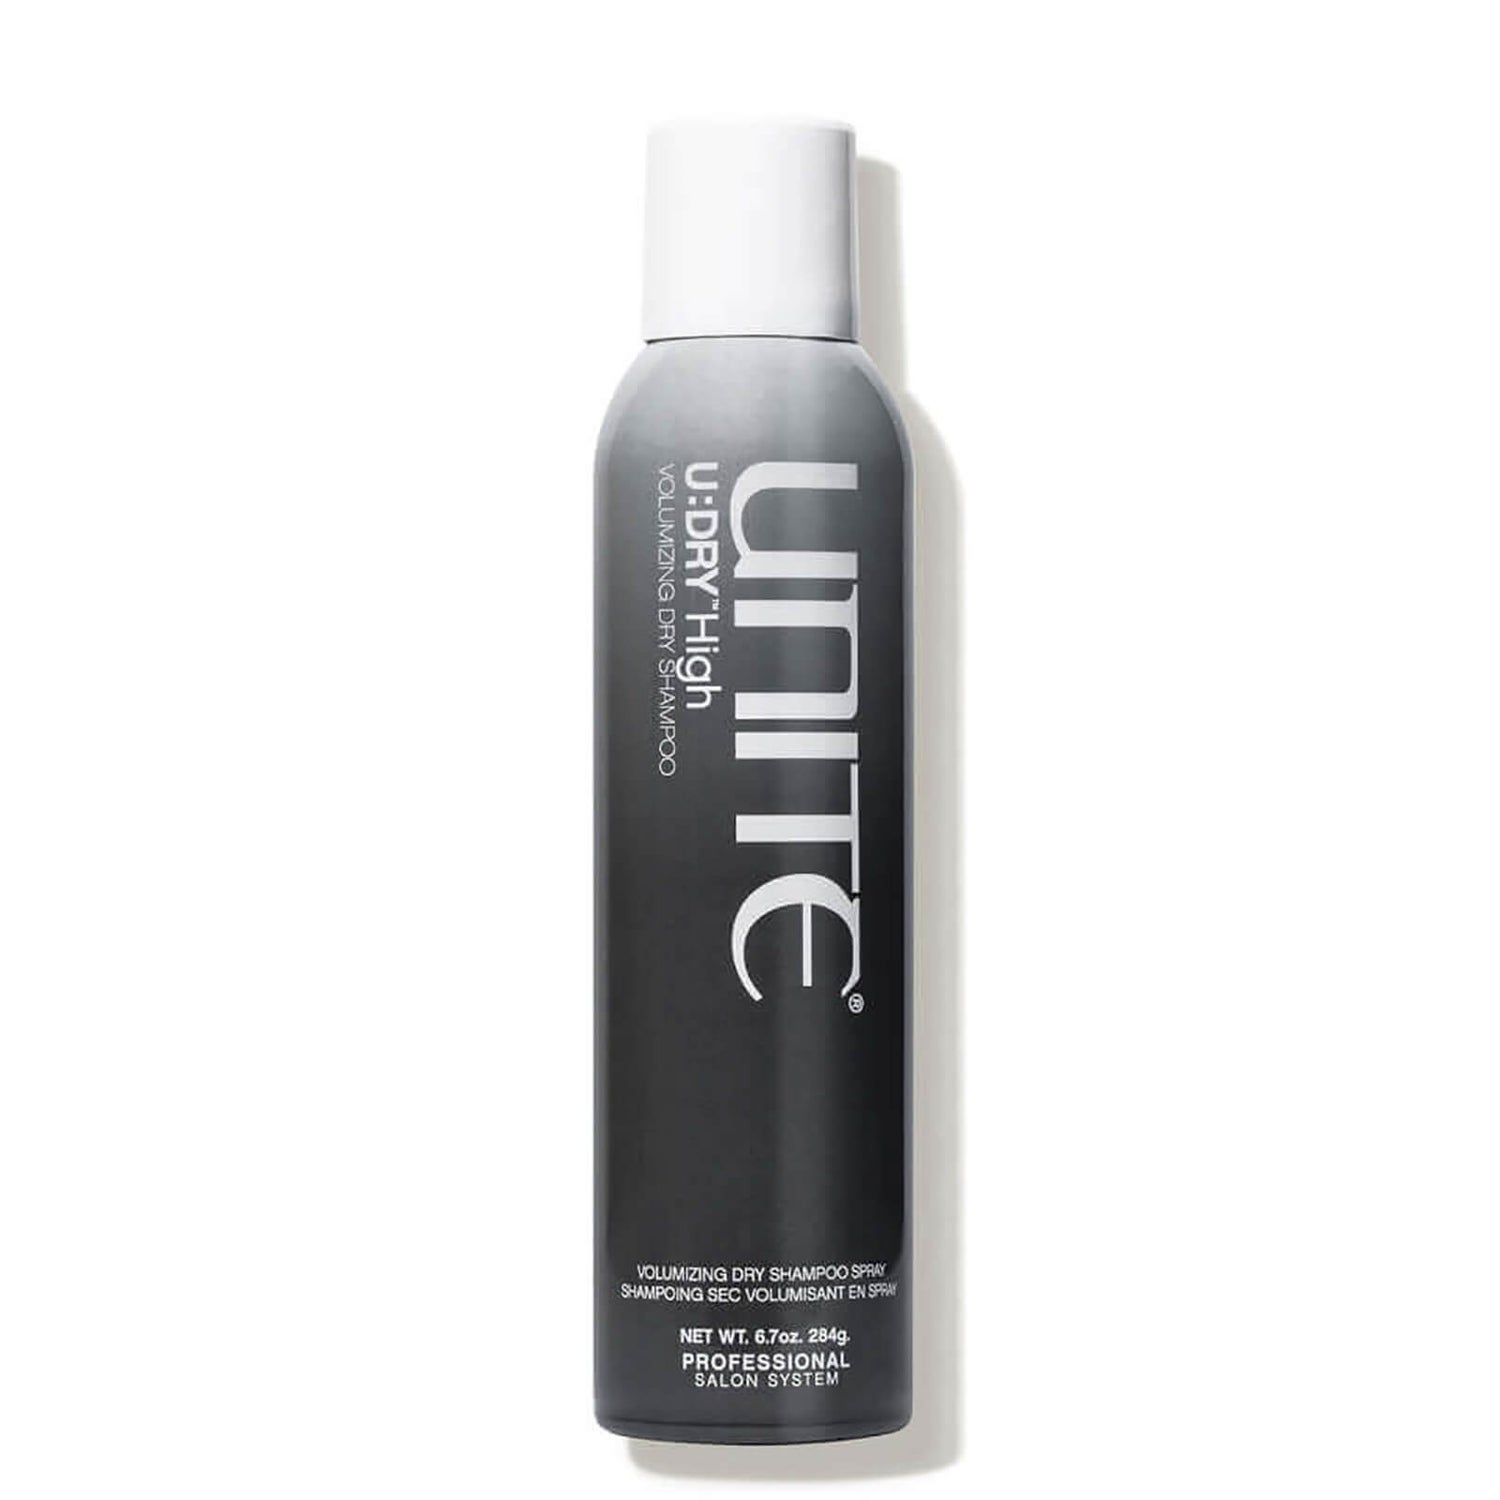 UNITE Hair U:DRY High Dry Shampoo (6.7 oz.)